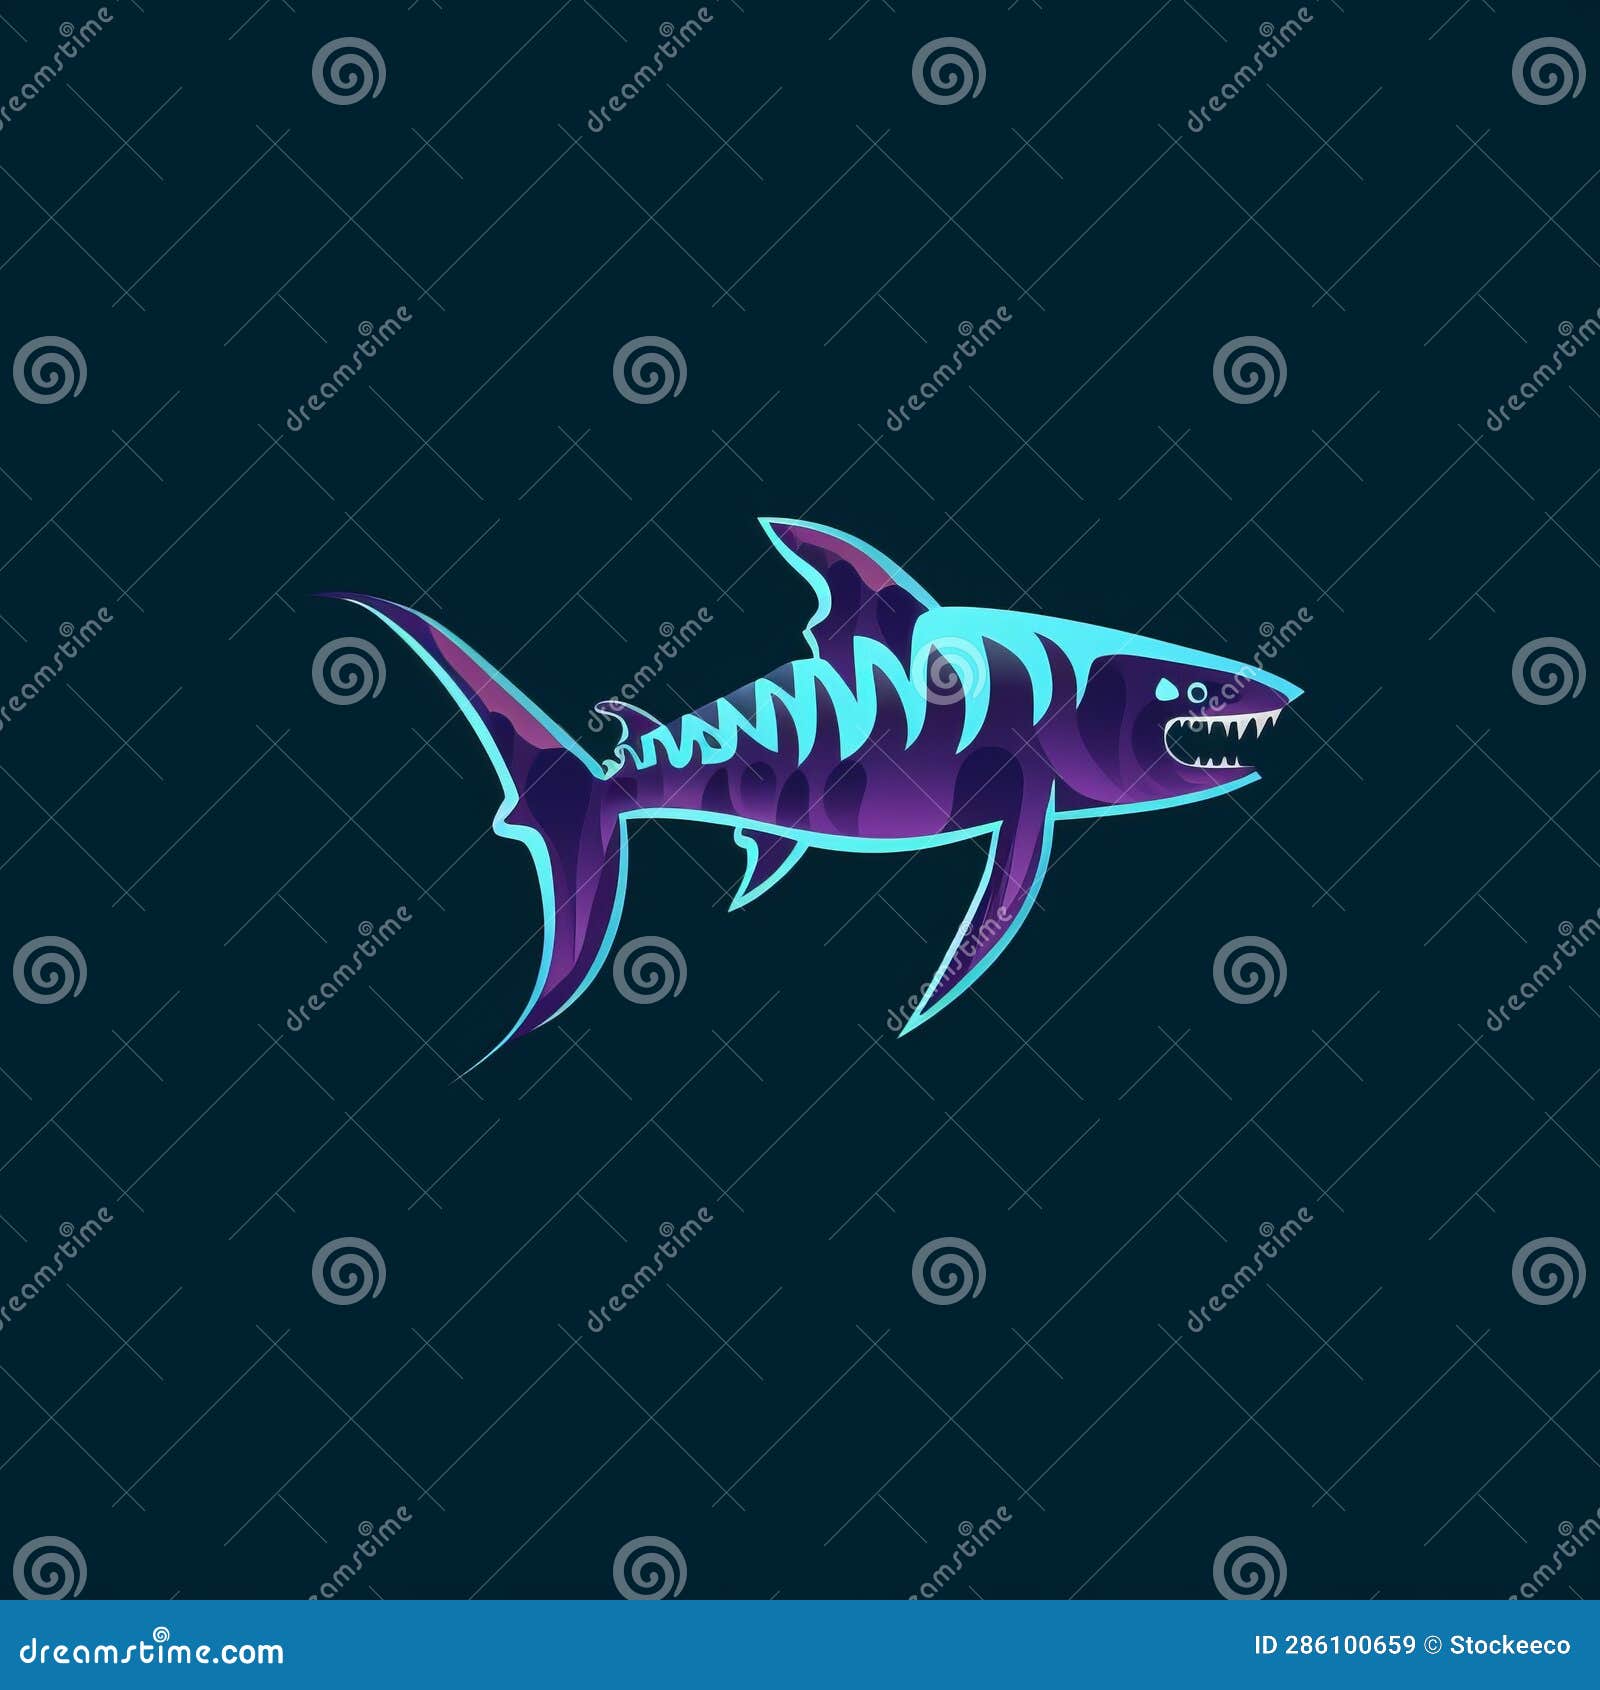 radiology unit logo: idiopathic thrombocytopenic purpura with zebra shark